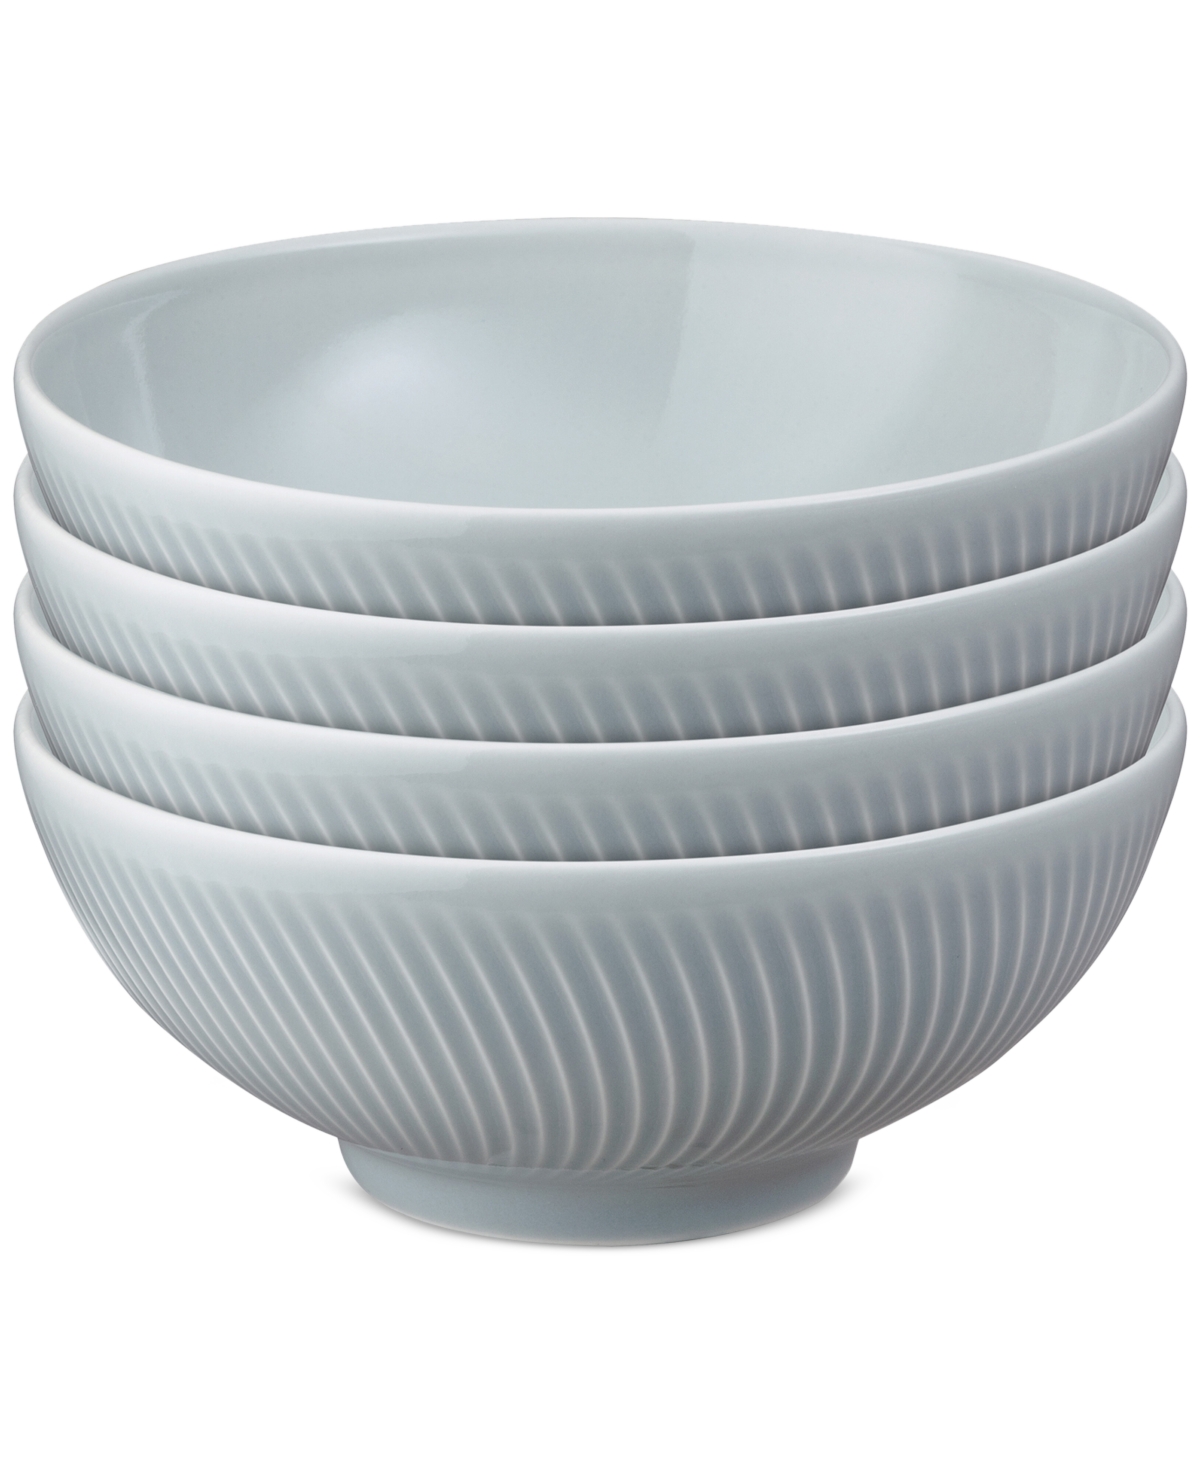 Arc Collection Porcelain Cereal Bowls, Set of 4 - Light Grey